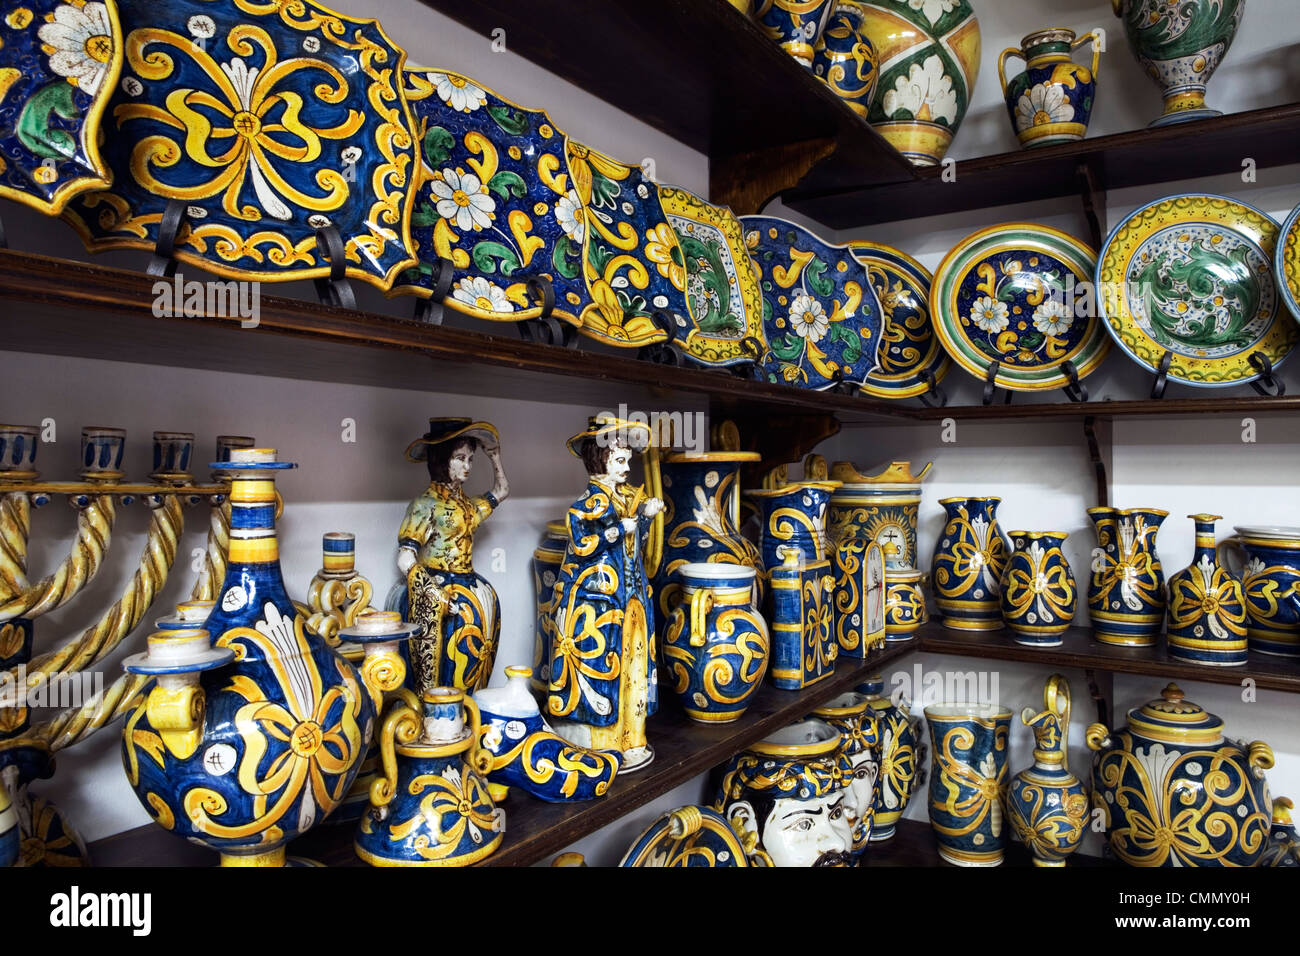 Realizzato localmente, ceramiche di Caltagirone, Sicilia, Italia, Europa Foto Stock